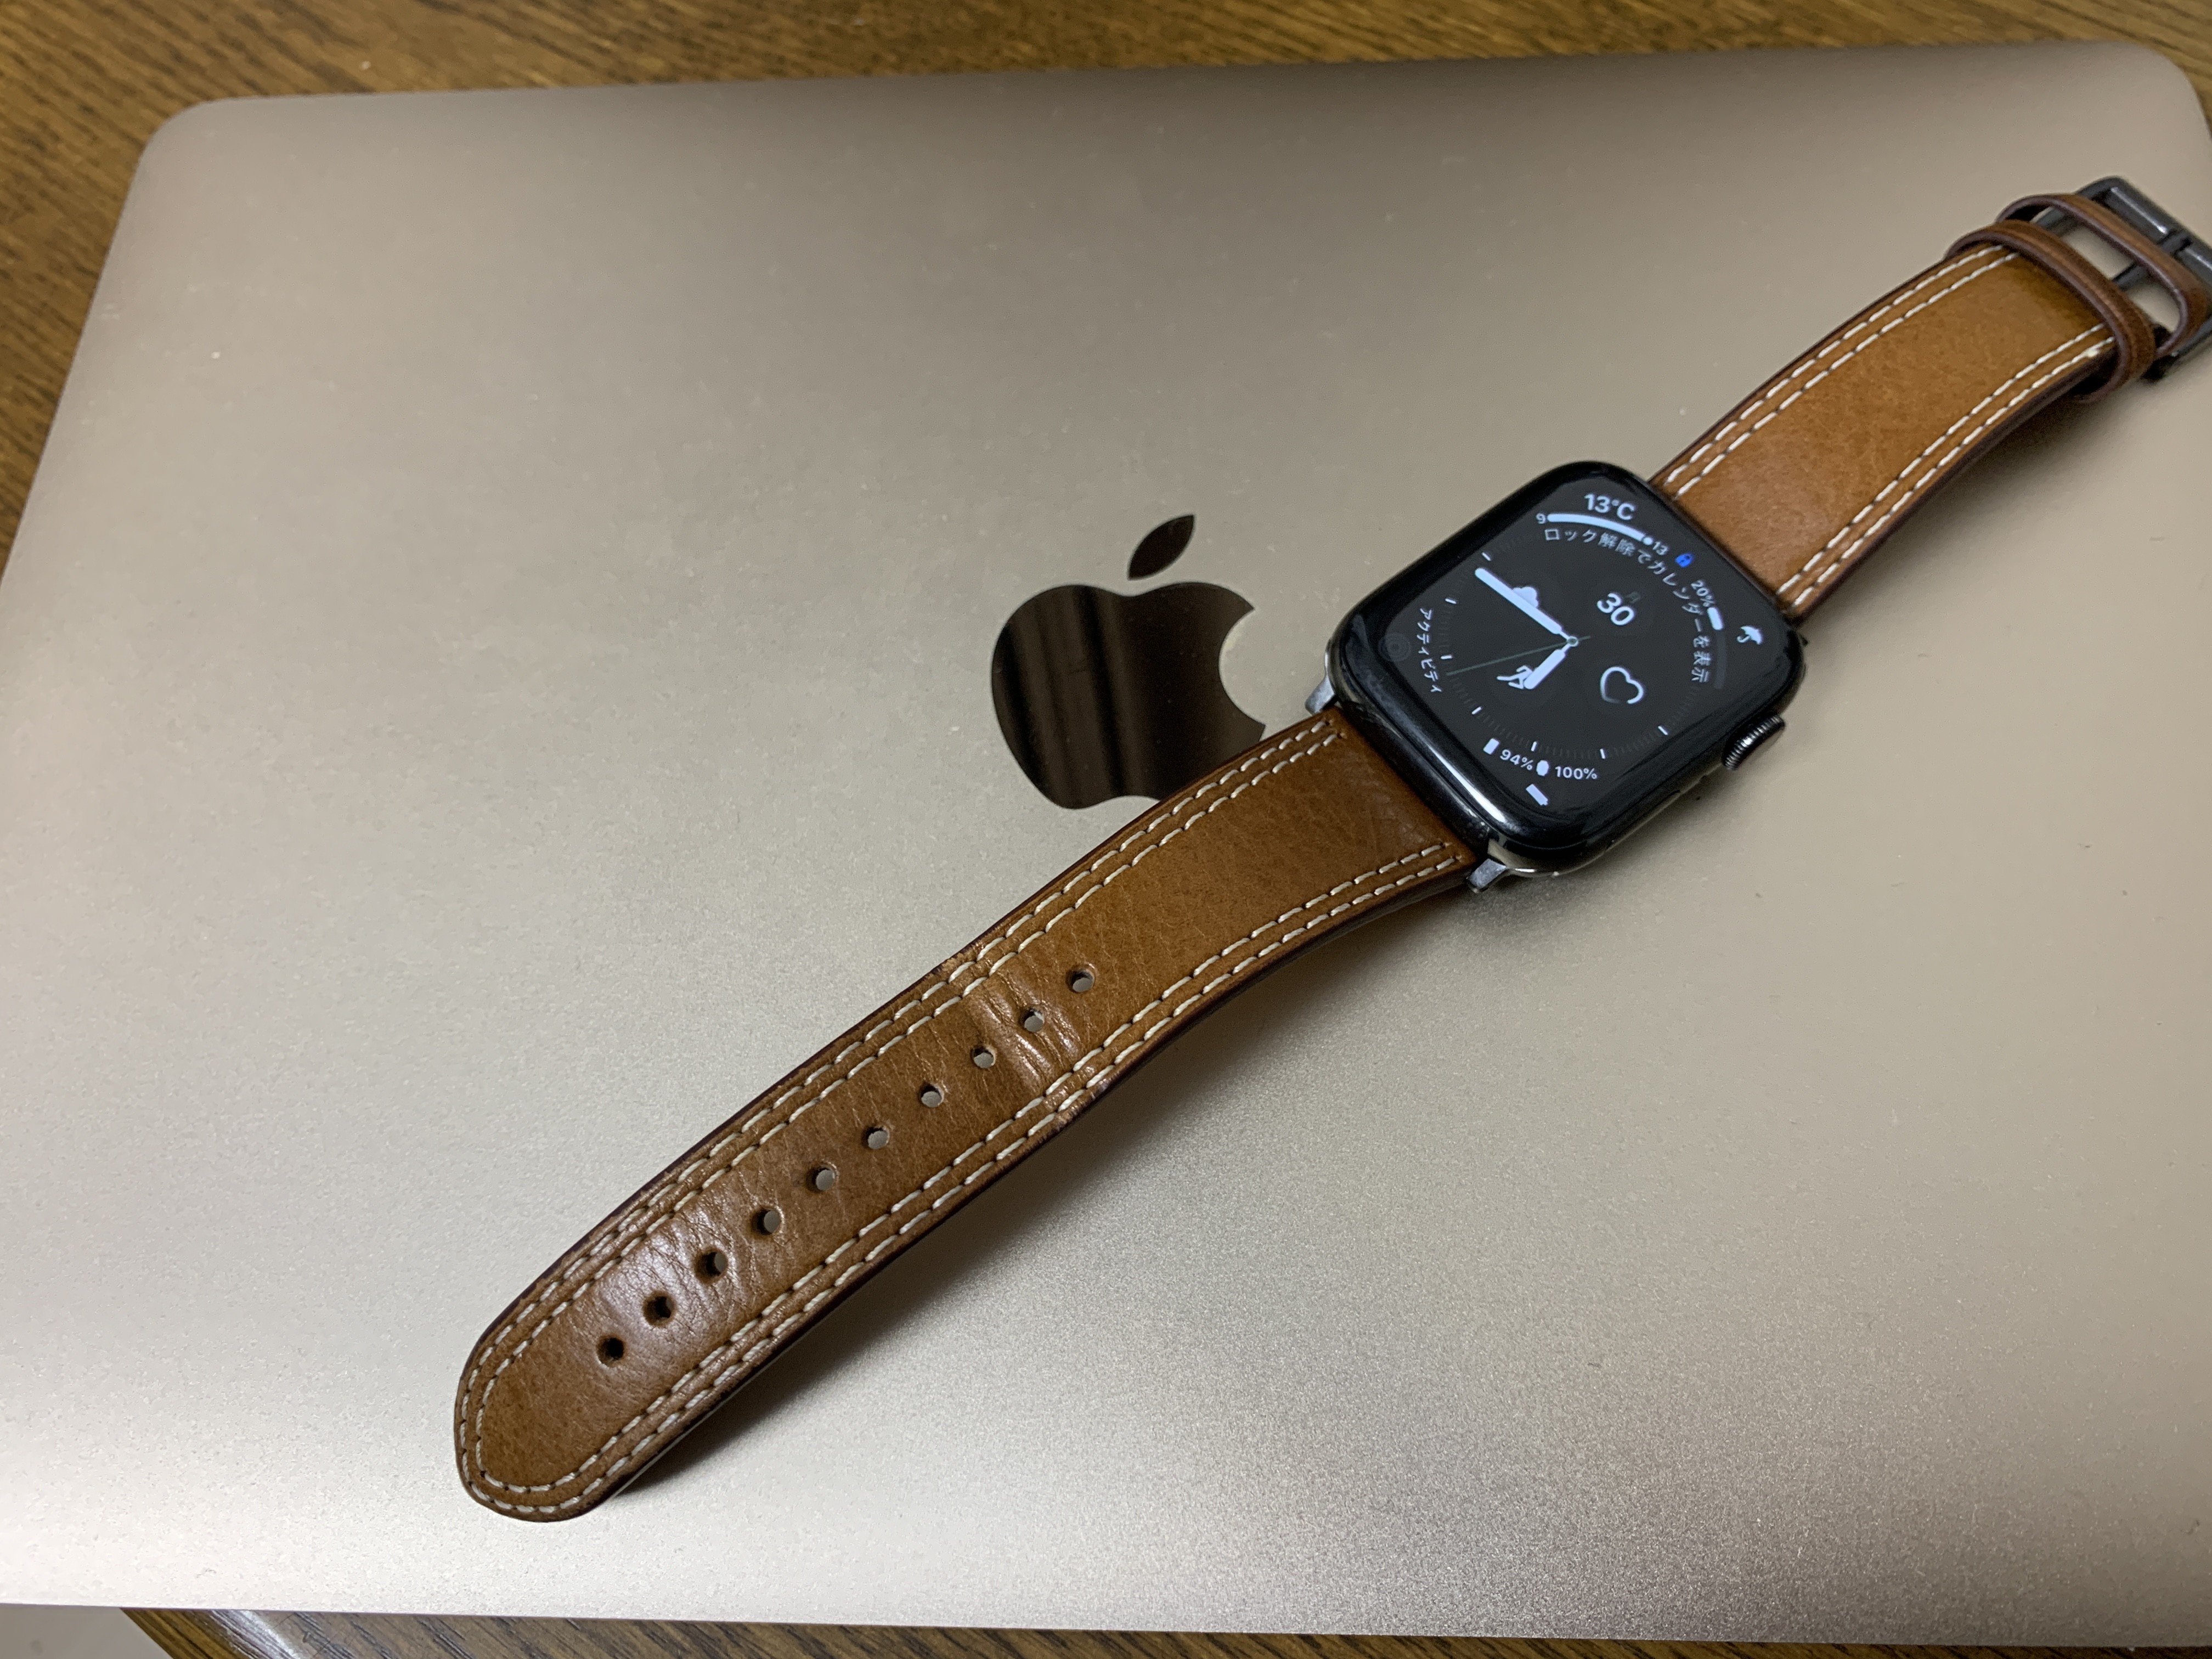 Apple Watch バンド 合皮 38 40 41mm ディープブルー １着でも送料無料 AppleWatchレザーバンド(38 40 41mm)  ディープブルー